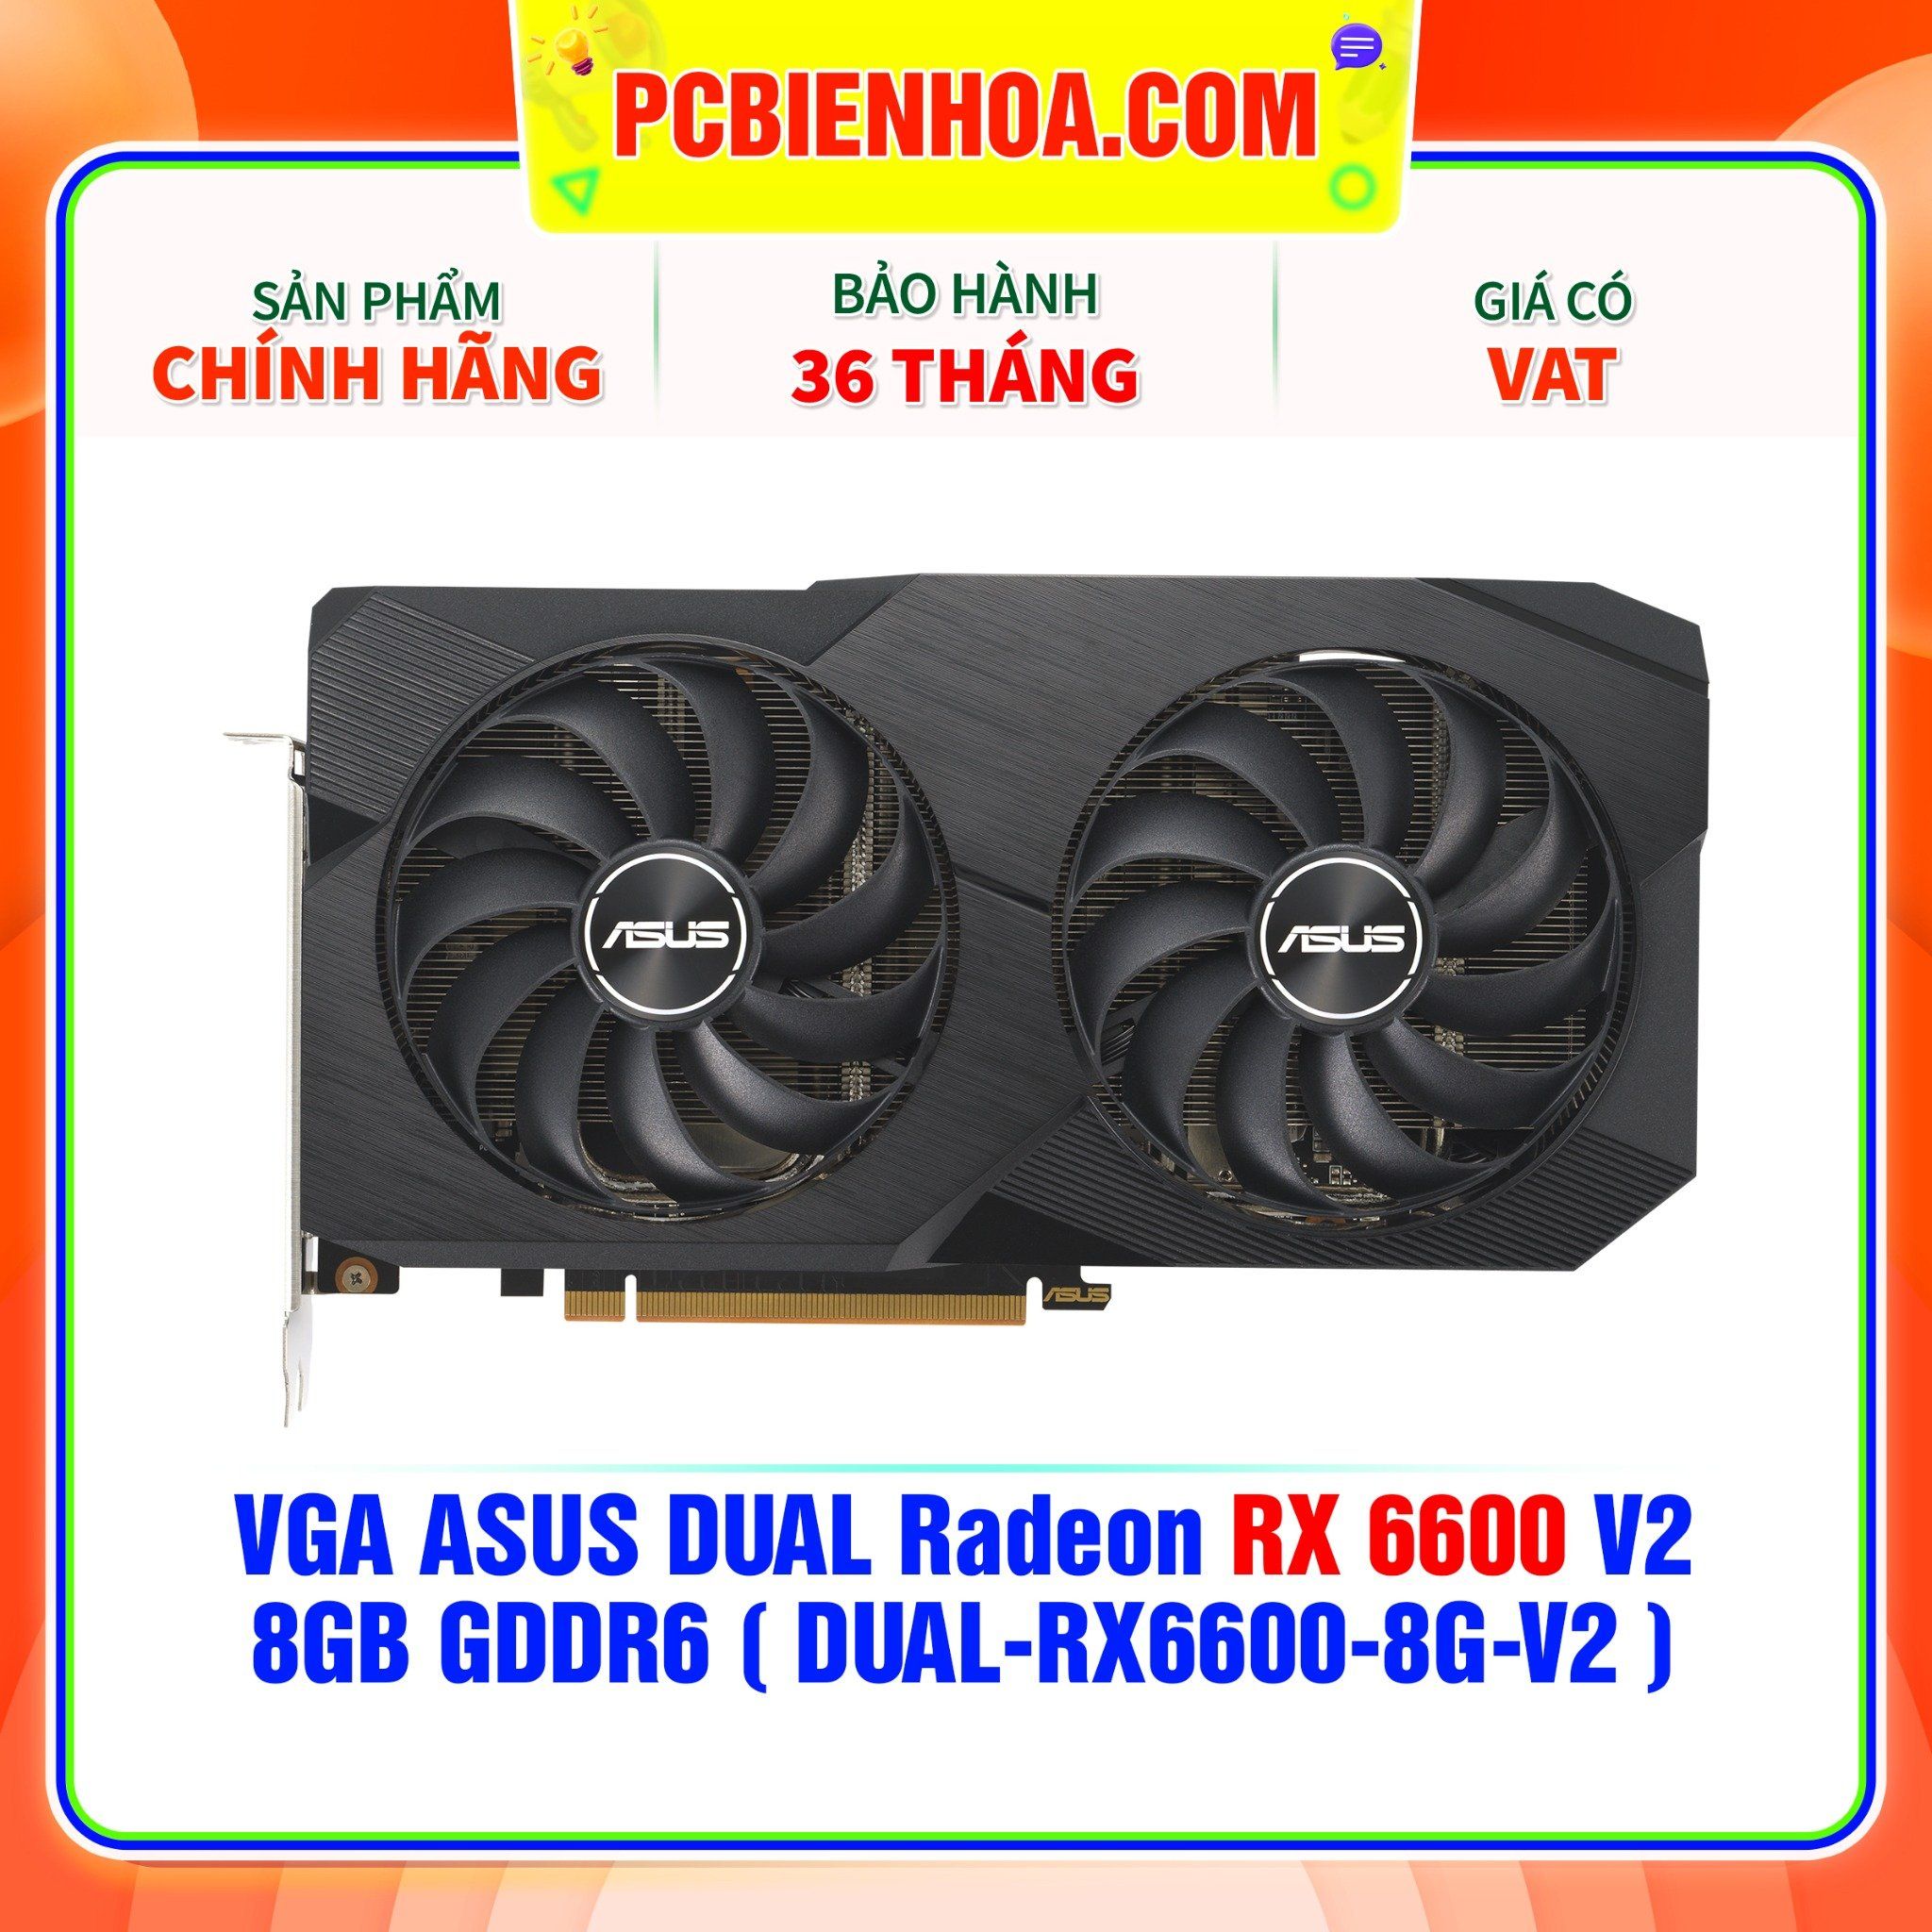  VGA ASUS DUAL Radeon RX 6600 V2 8GB GDDR6 ( DUAL-RX6600-8G-V2 ) 